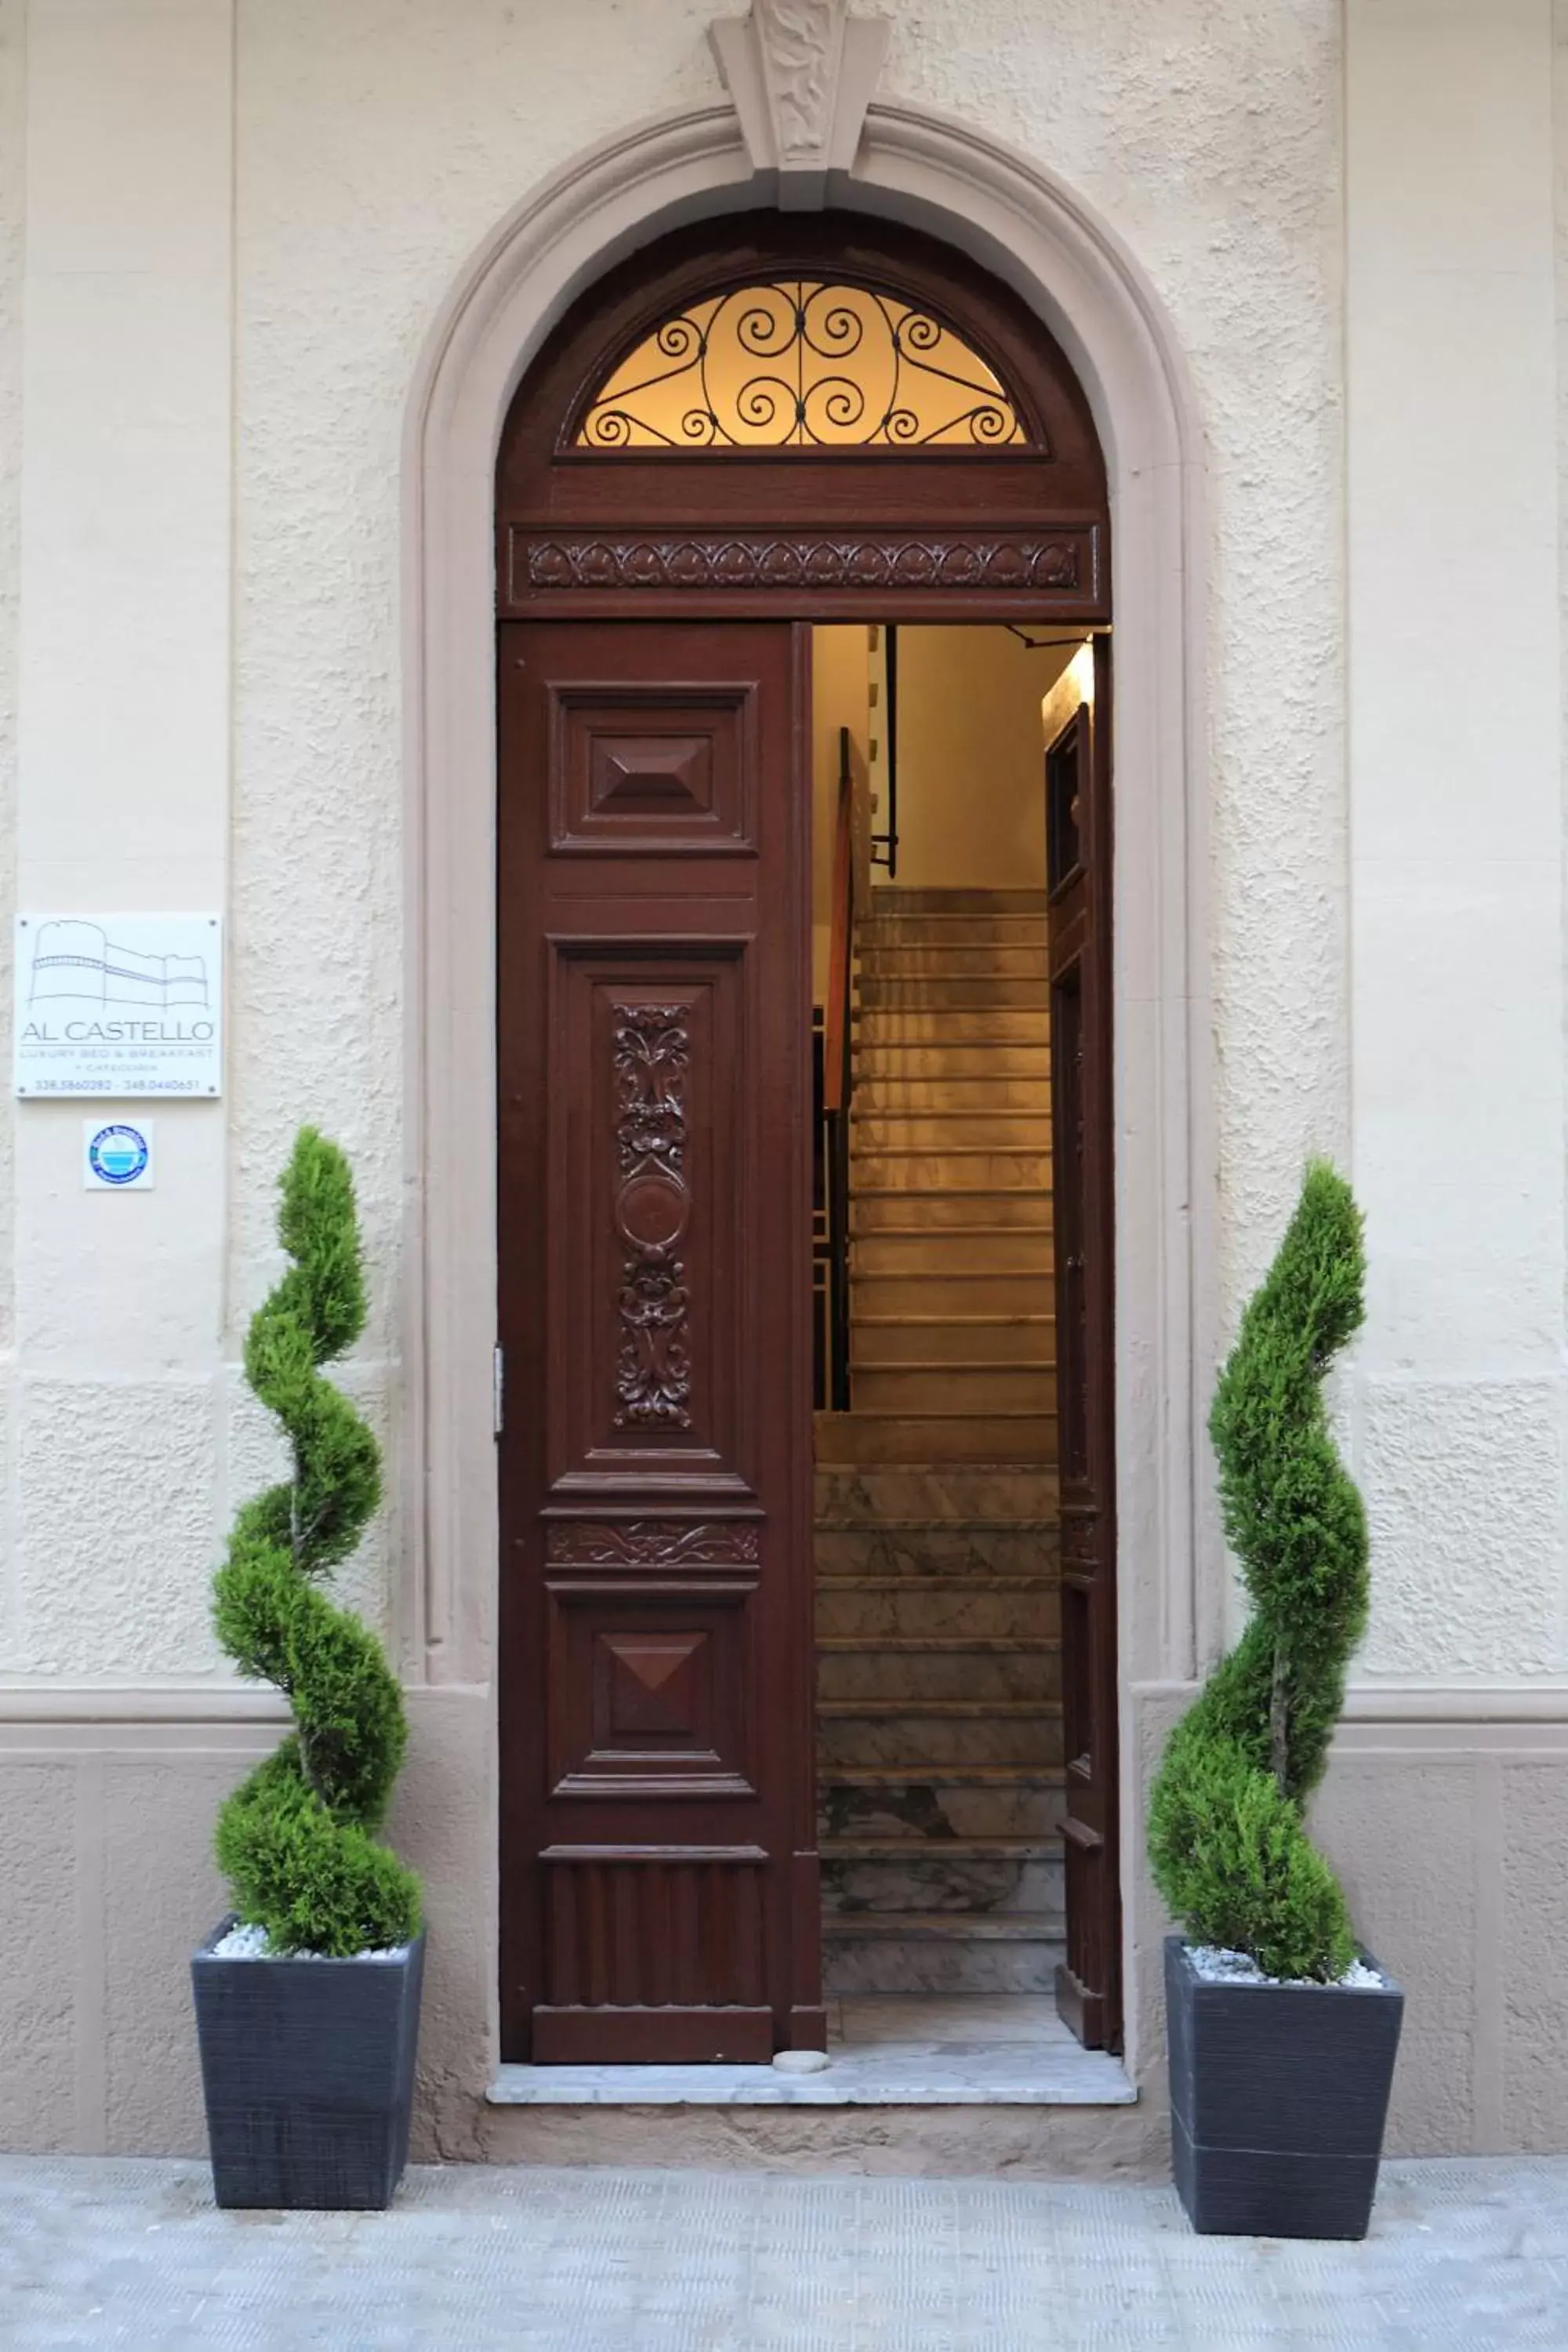 Facade/entrance in Al Castello Luxury B&B